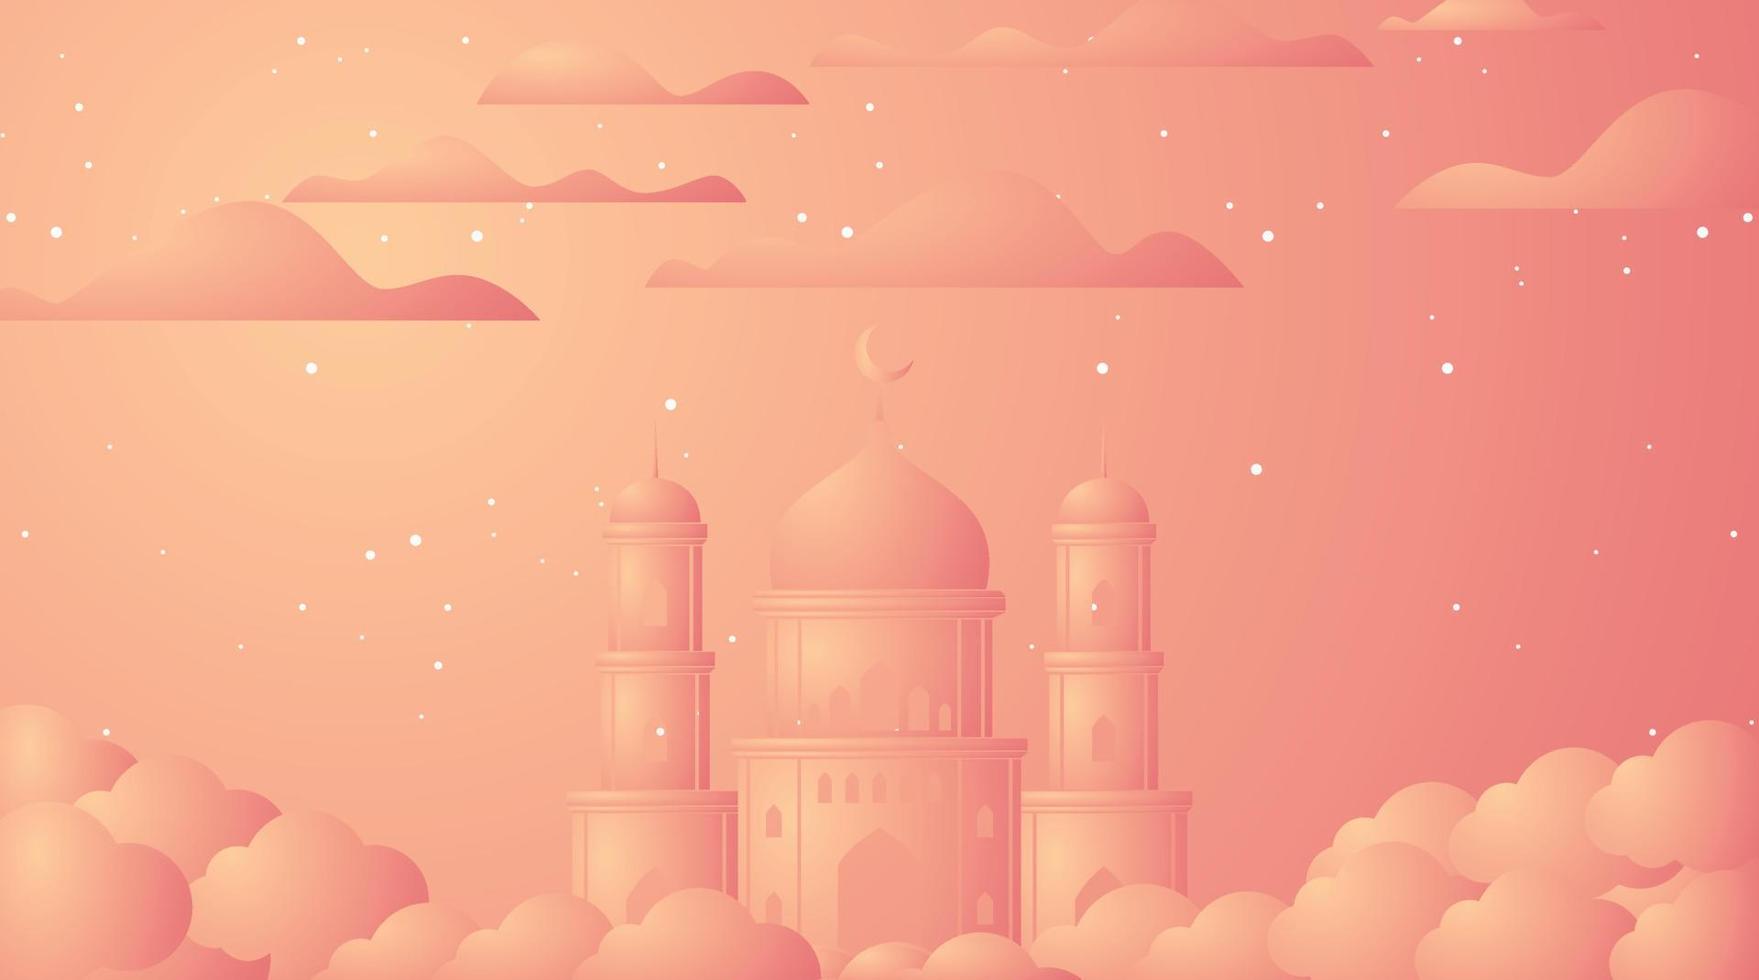 islamisk bakgrundsdesign. ramadan bakgrund. eid mubarak bakgrund vektor